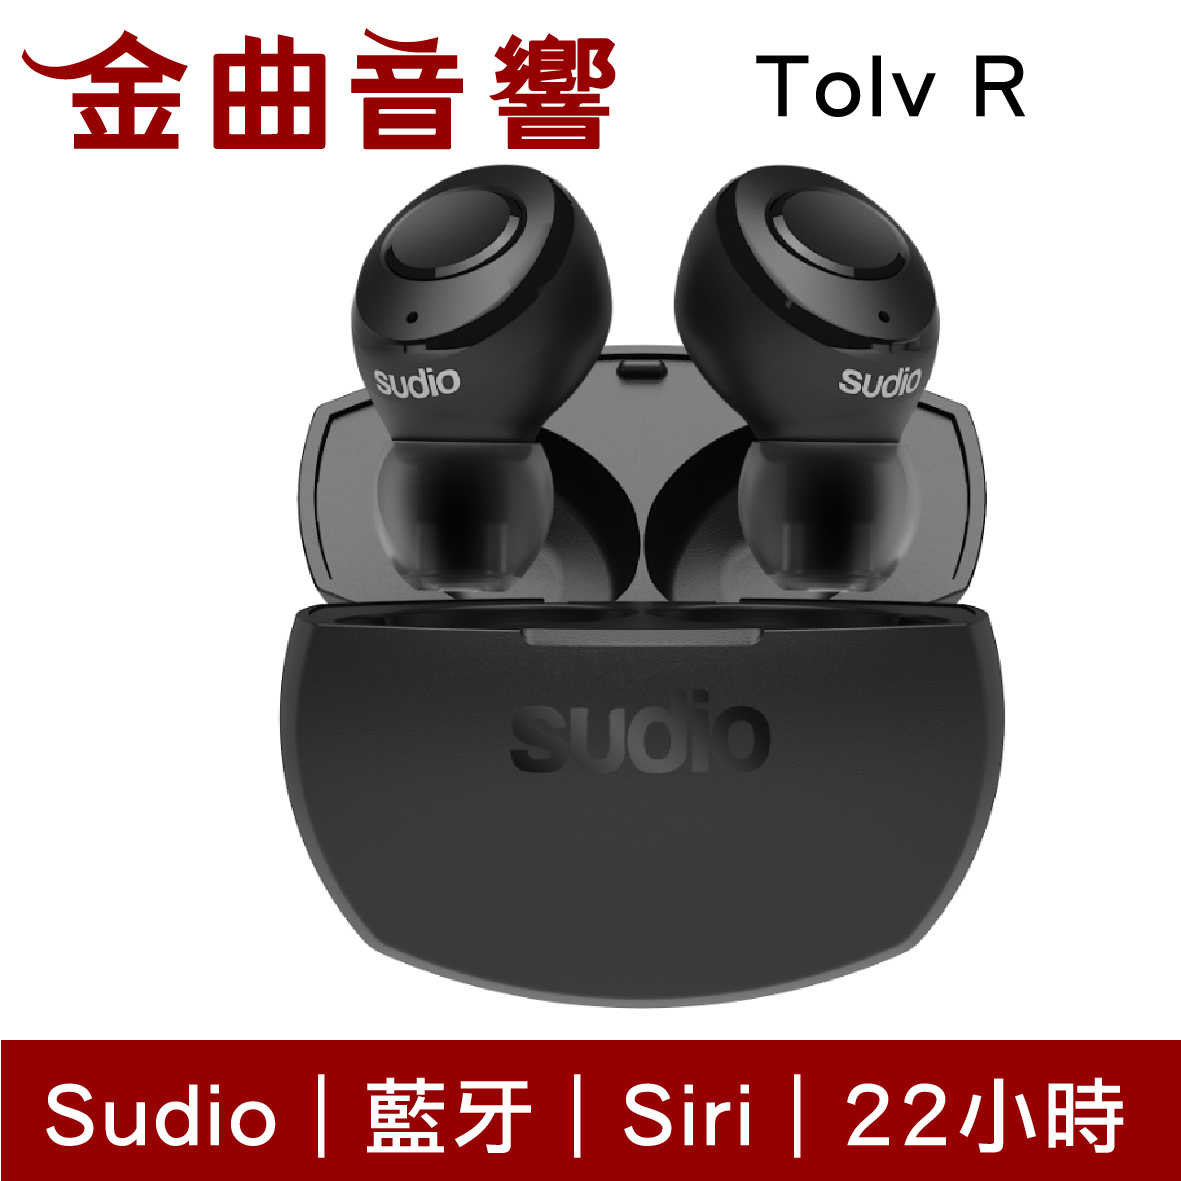 Sudio Tolv R 黑色 真無線 藍芽耳機 可通話 語音助理 TolvR | 金曲音響